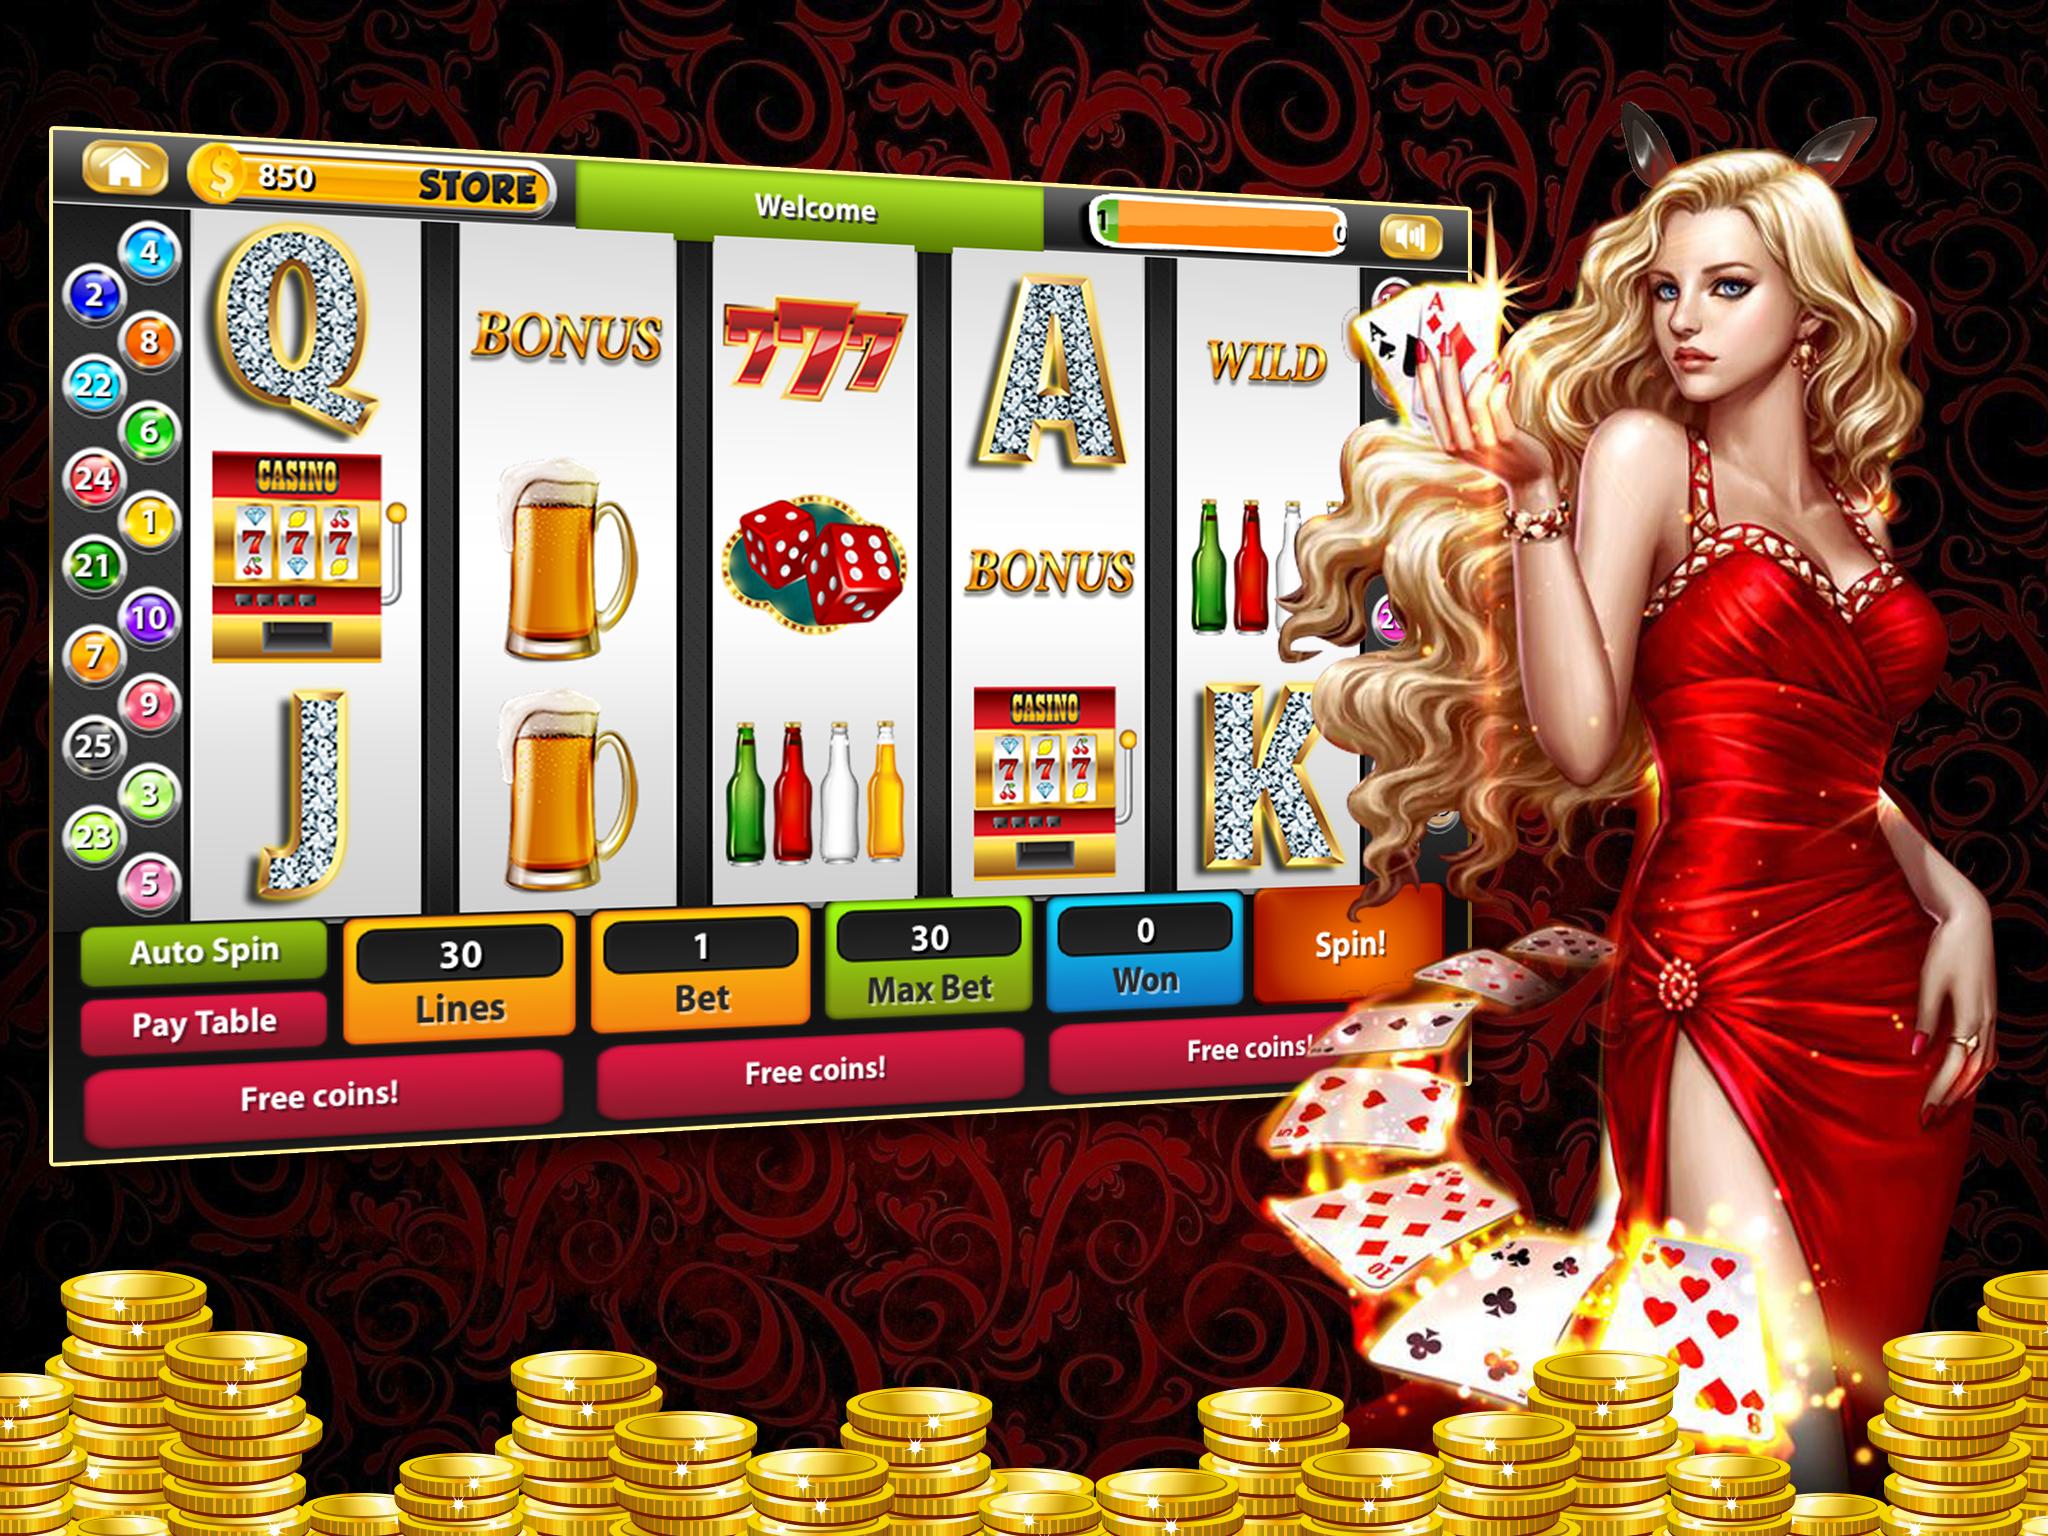 Казино на настоящие деньги играть онлайн safe online casino powered by vbulletin